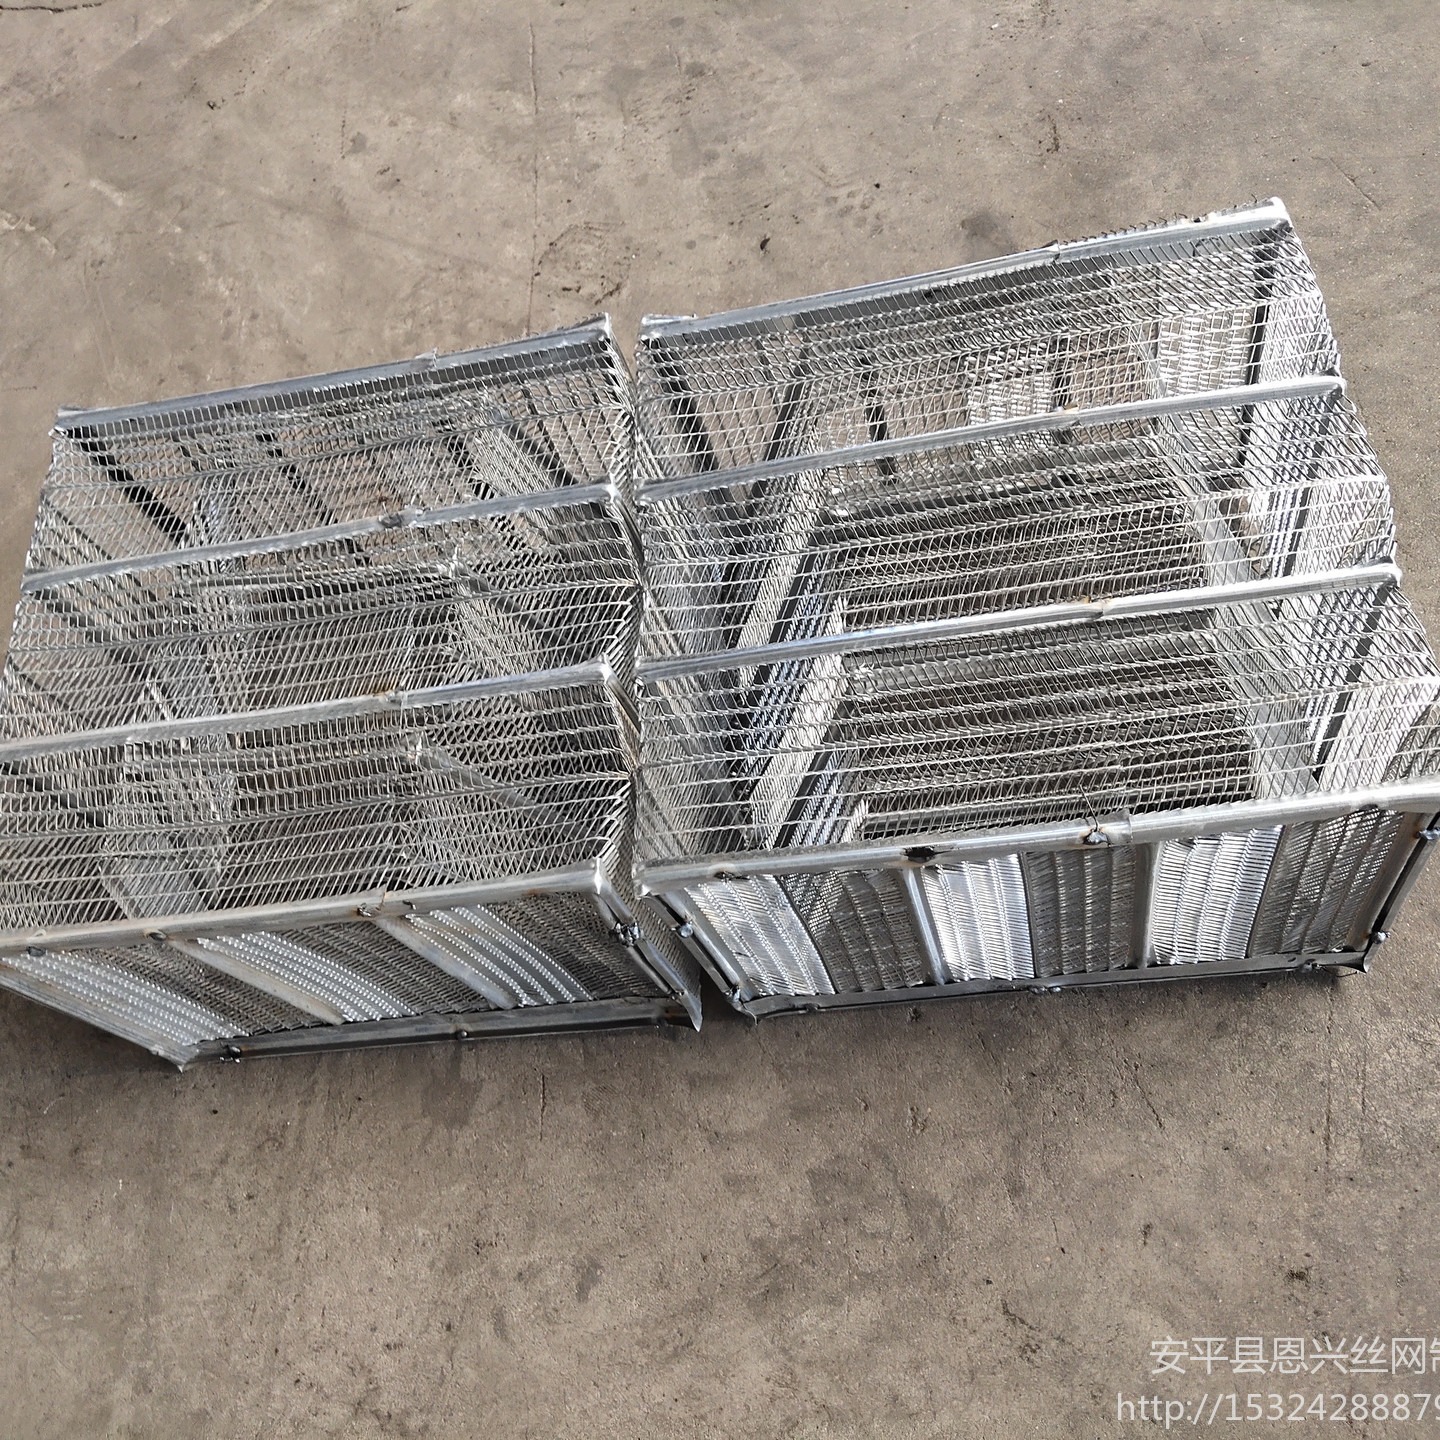 安平恩兴  生产钢网箱厂家  椭圆形空心楼盖网箱施工  有筋扩张网箱  可定制